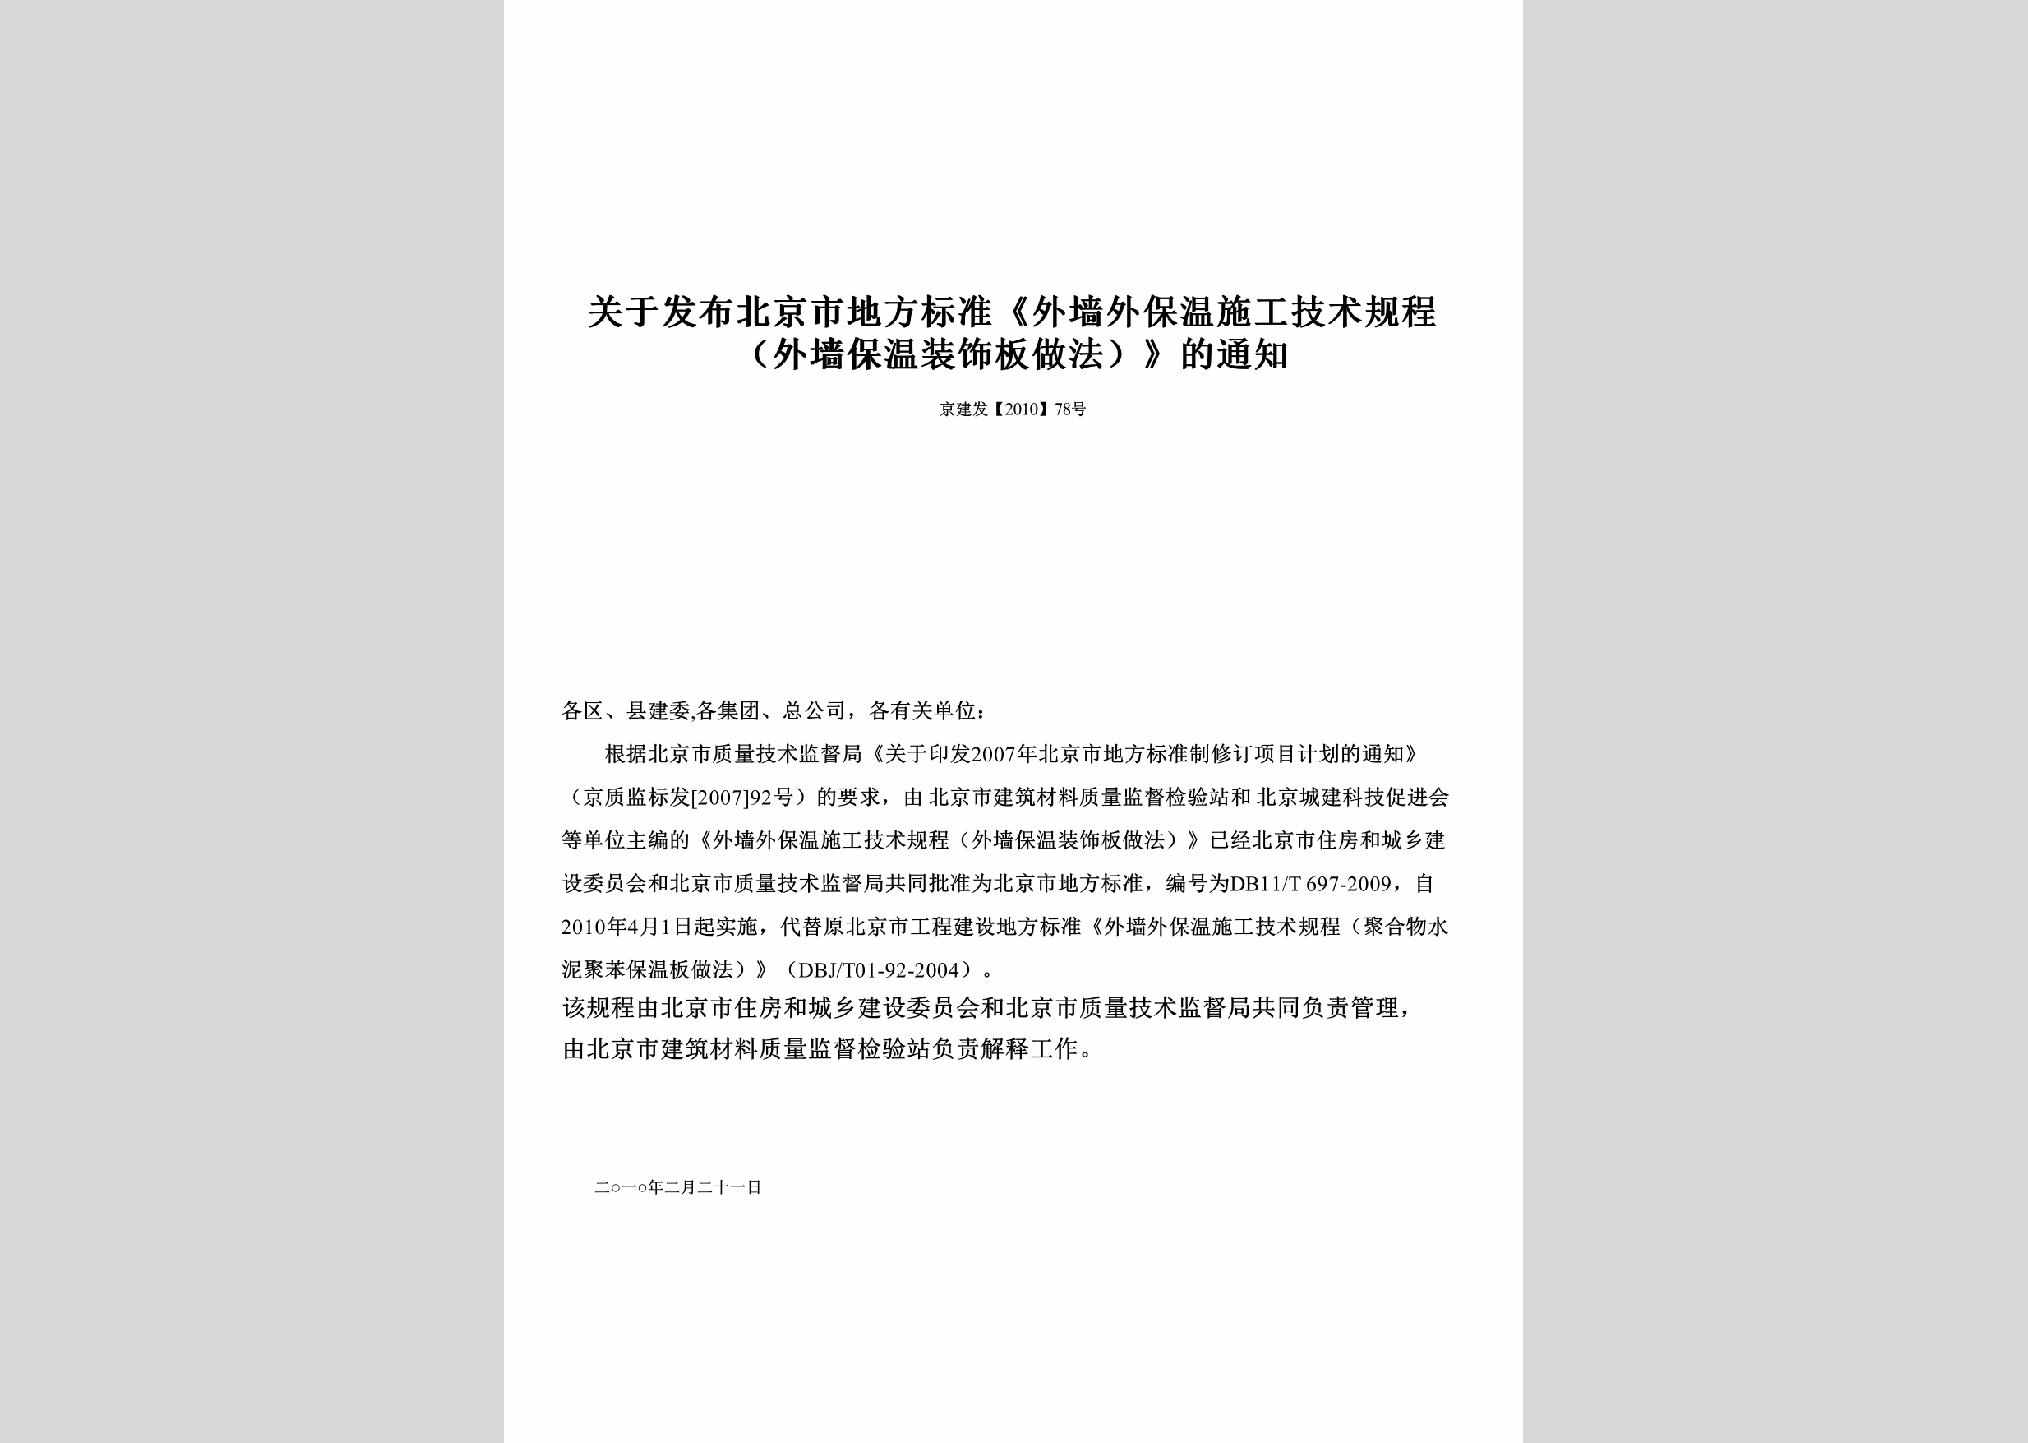 京建发[2010]78号：关于发布北京市地方标准《外墙外保温施工技术规程（外墙保温装饰板做法）》的通知